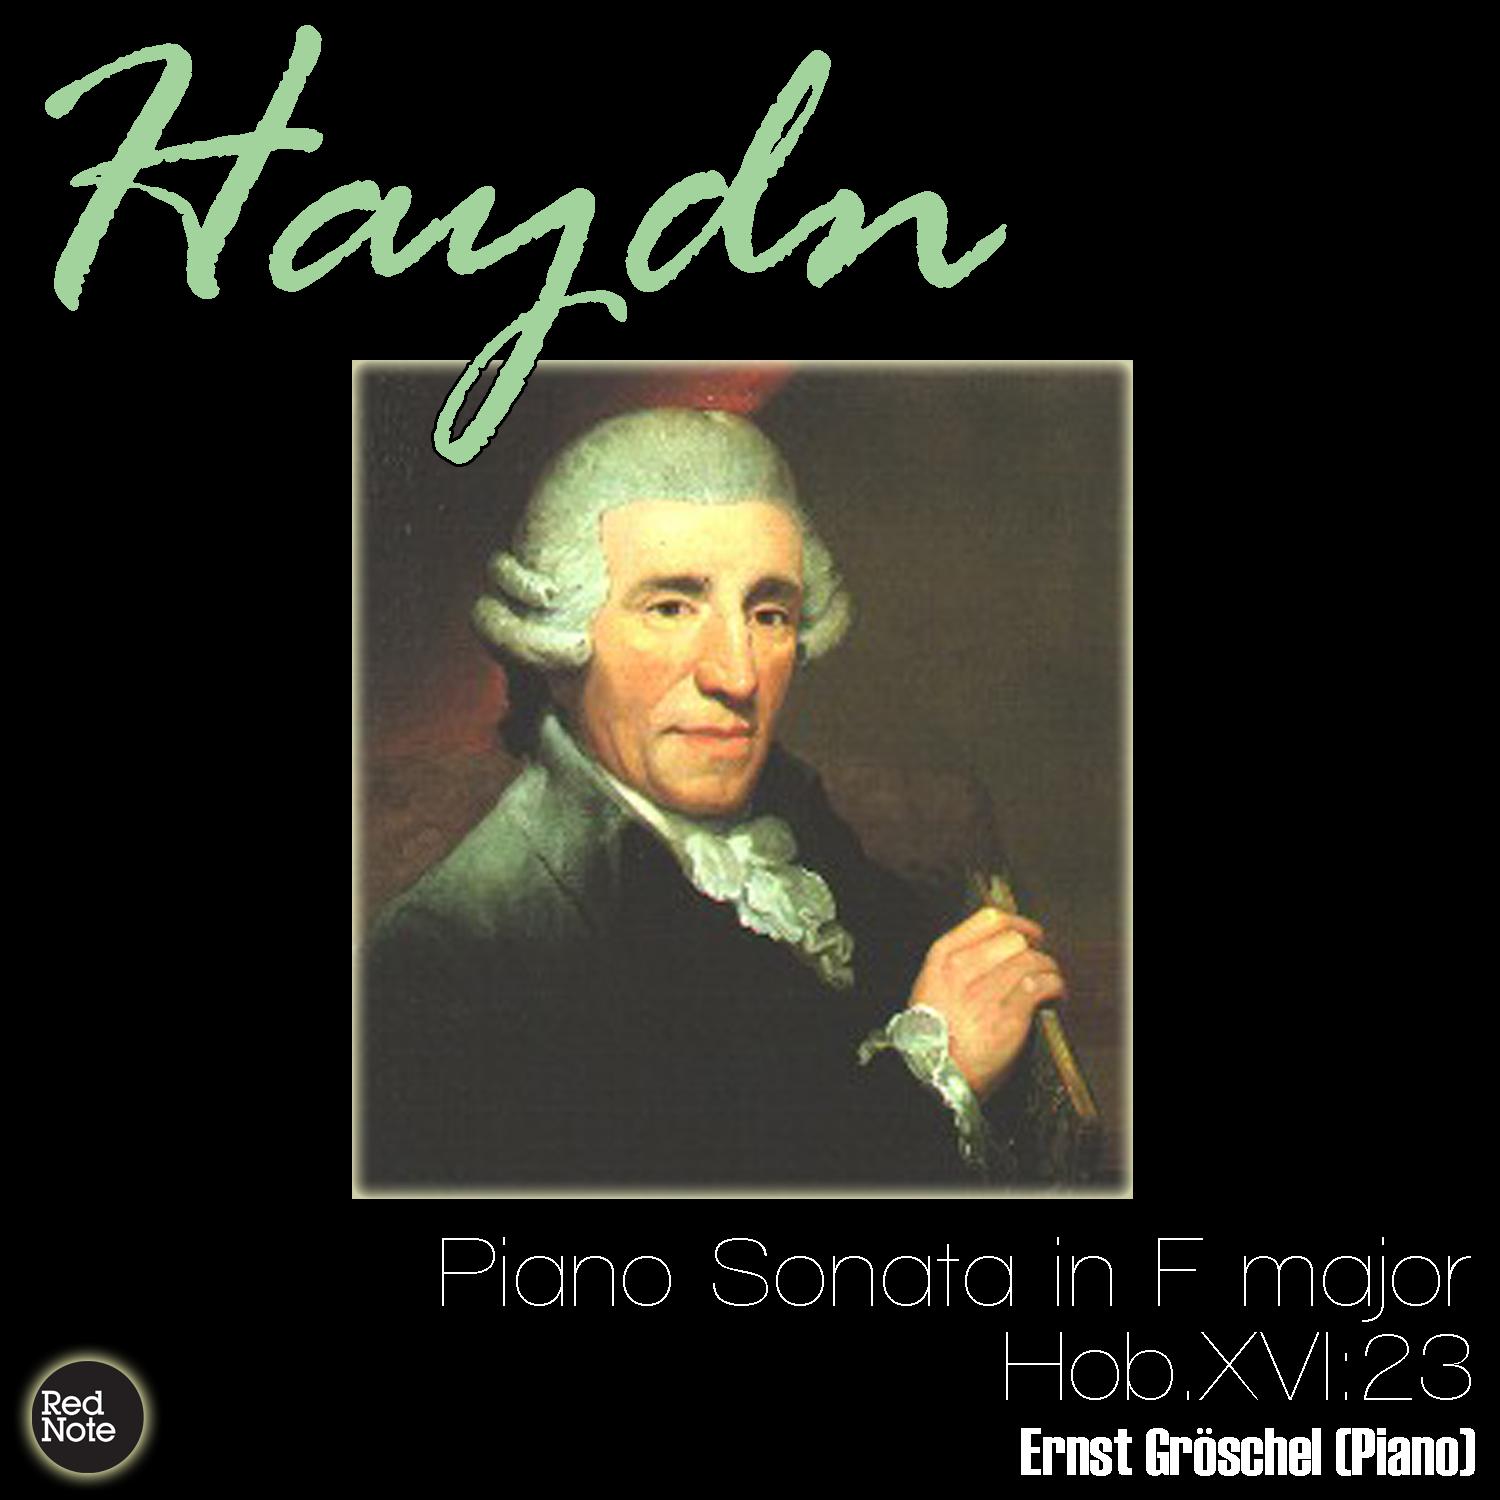 Haydn: Piano Sonata in F major, Hob.XVI:23